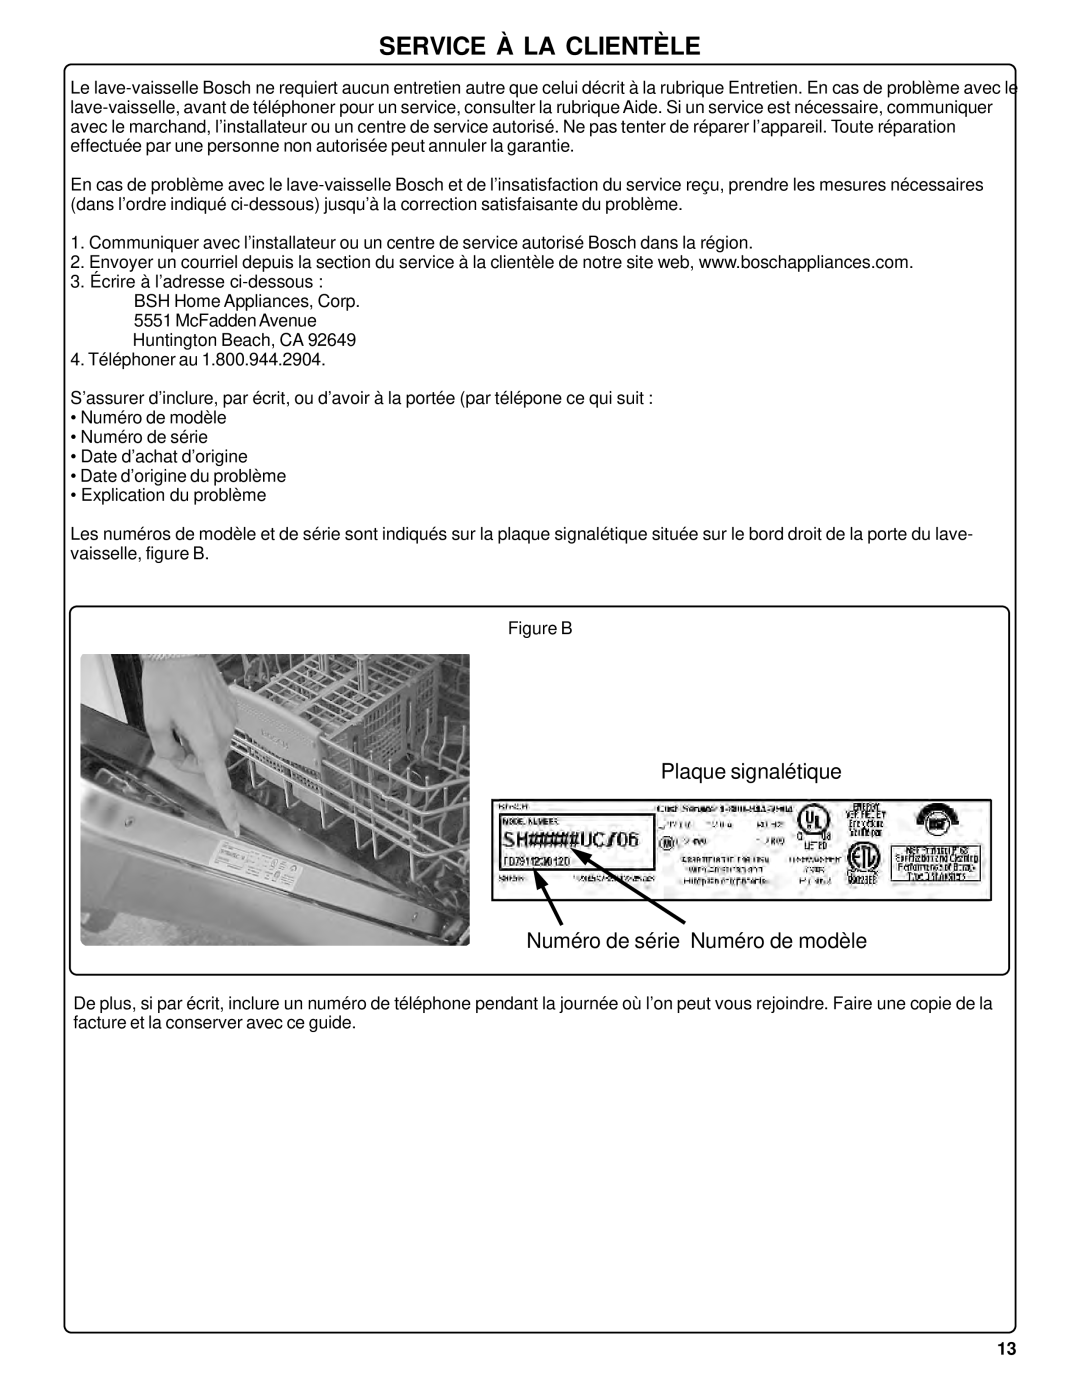 Bosch Appliances SHU42L manual Service À La Clientèle, Plaque signalétique Numéro de série Numéro de modèle 